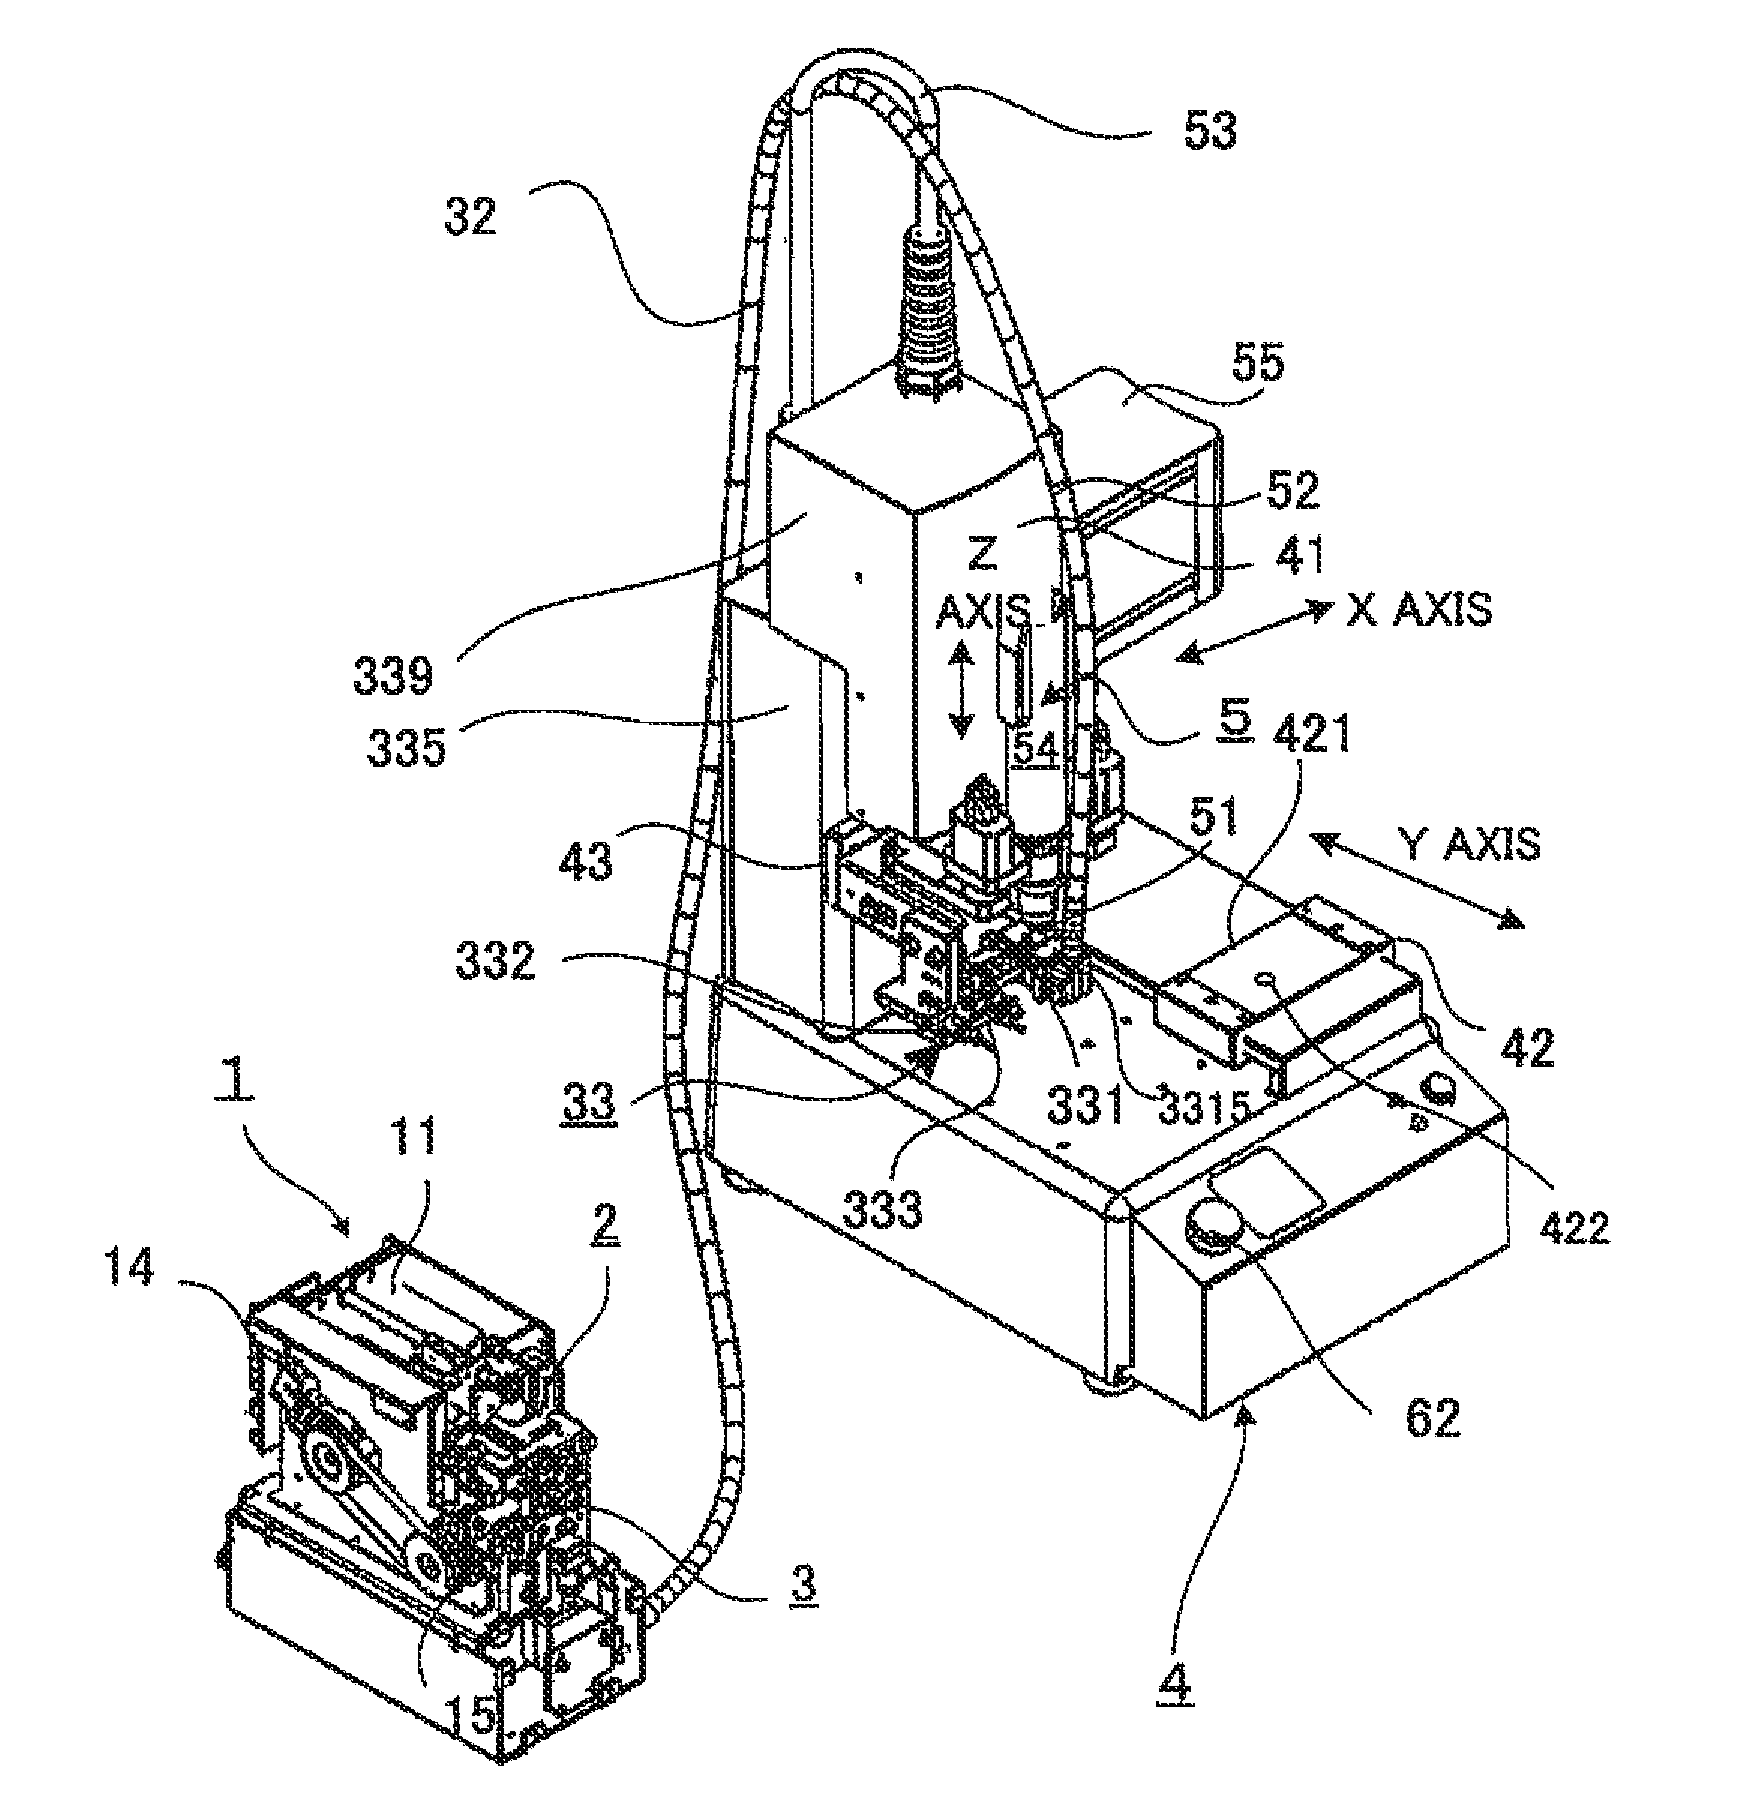 Automatic screw tightening apparatus